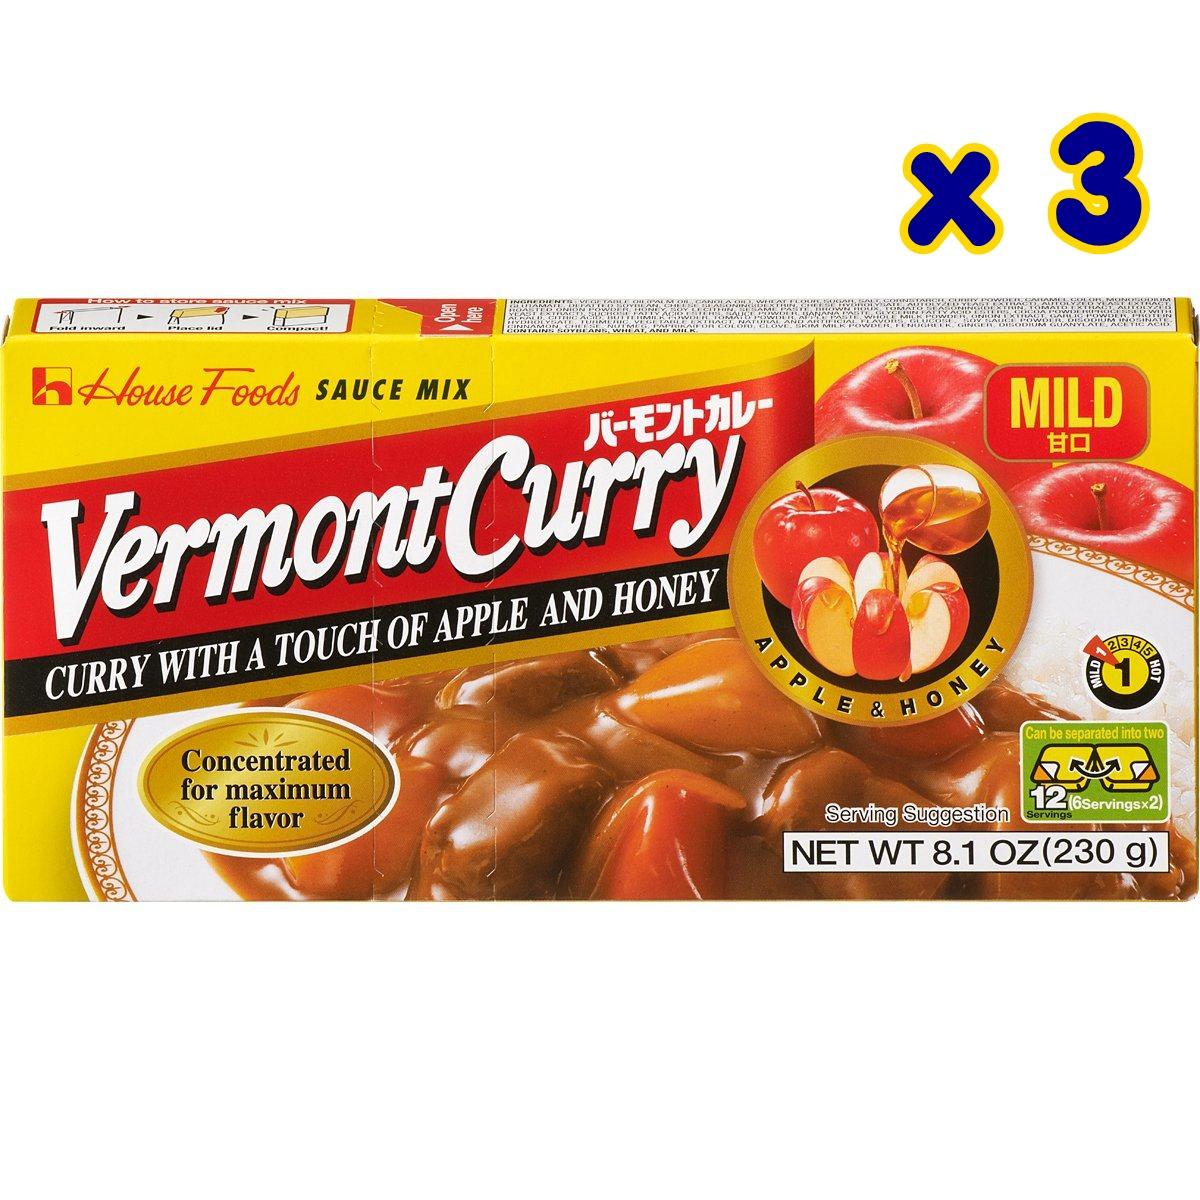 Vermont Curry เครื่องแกงกะหรี่ ชนิด เผ็ดน้อย สำหรับ 12 ที่ ขนาด 230 กรัม จำนวน 3 กล่อง